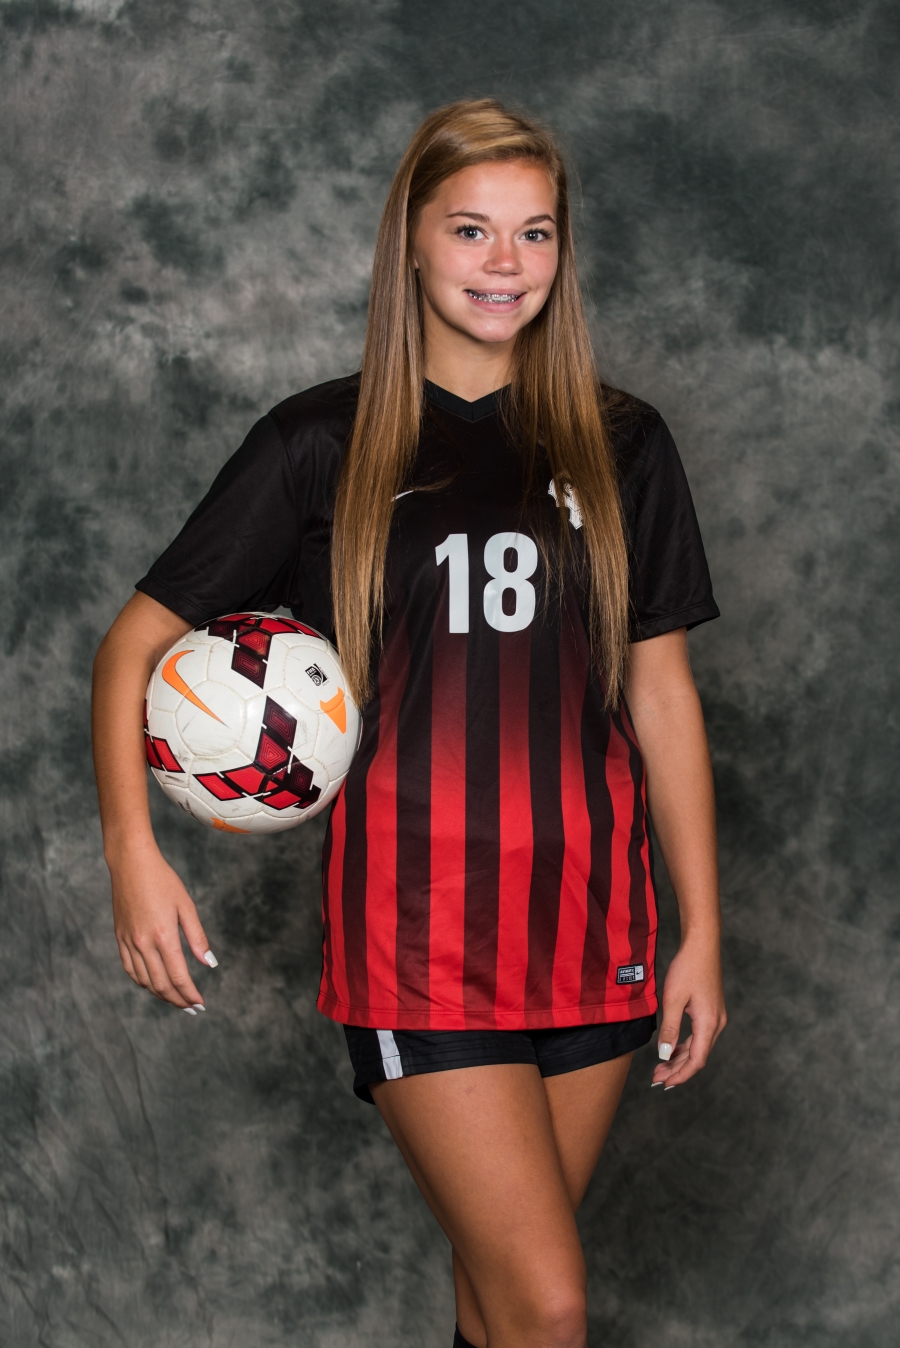 Enquirer Girls' Soccer Athlete of the Week - Sophia Kuerze